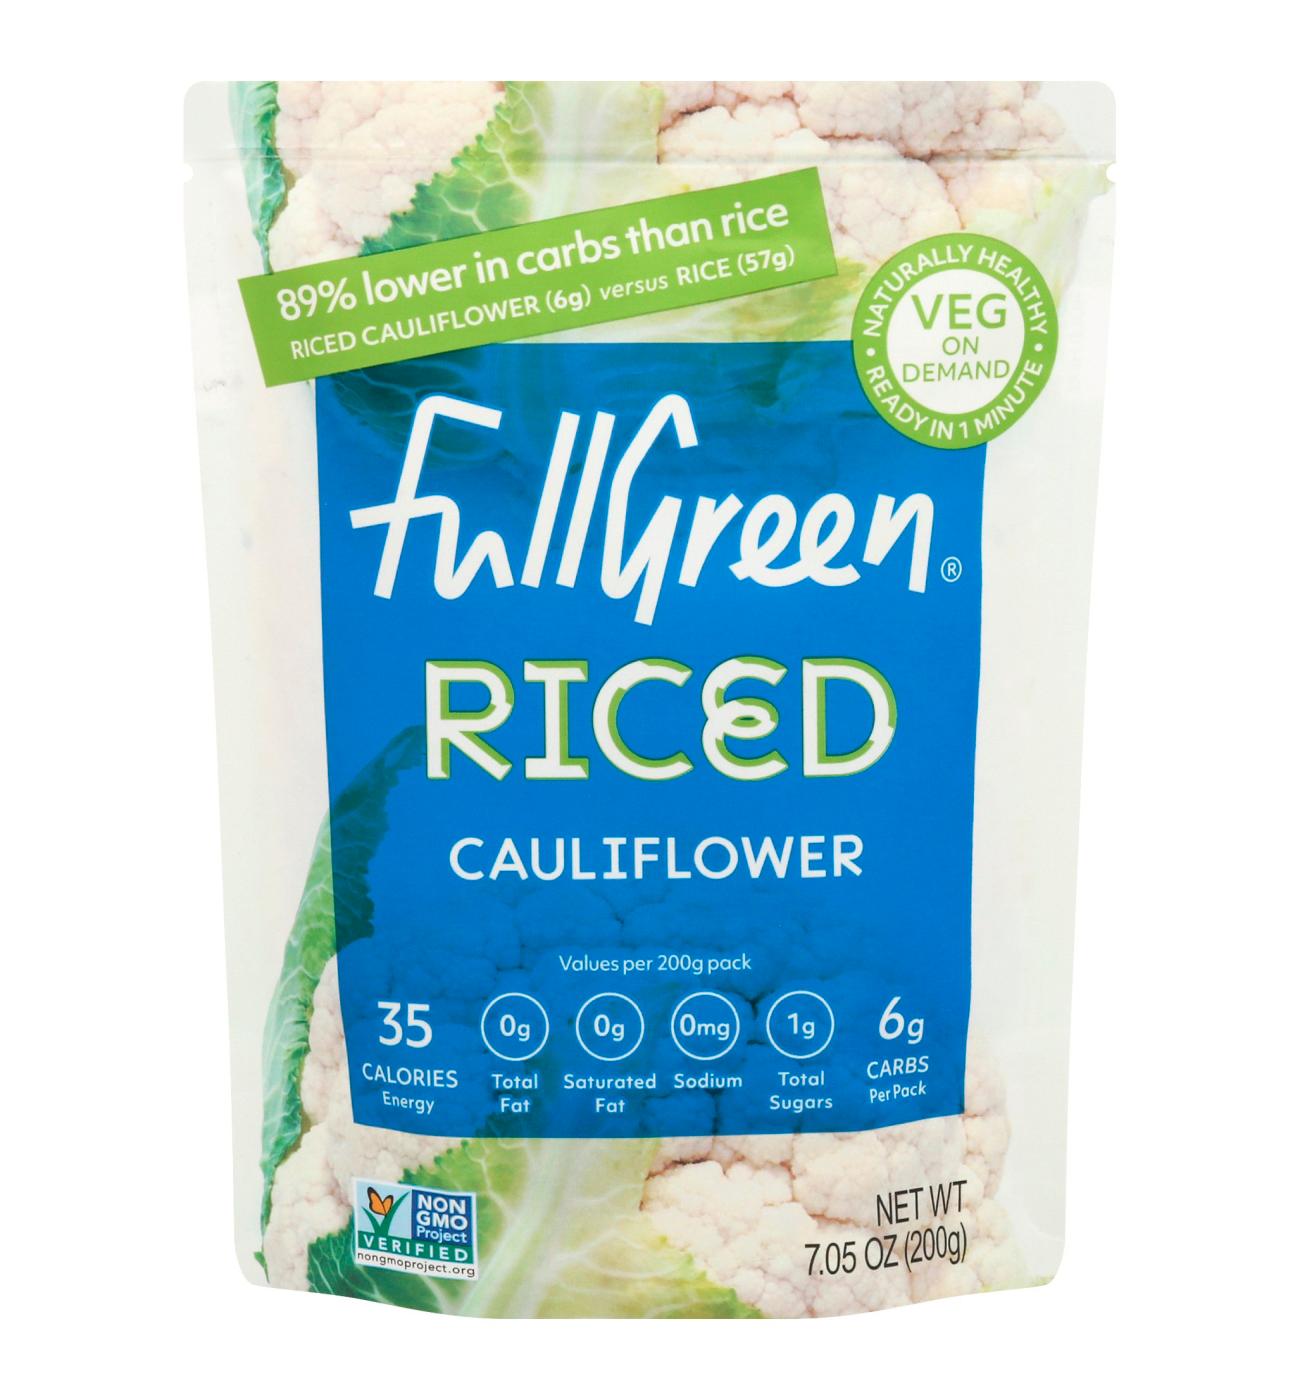 Full Green Rice Cauli Cauliflower Rice; image 1 of 2